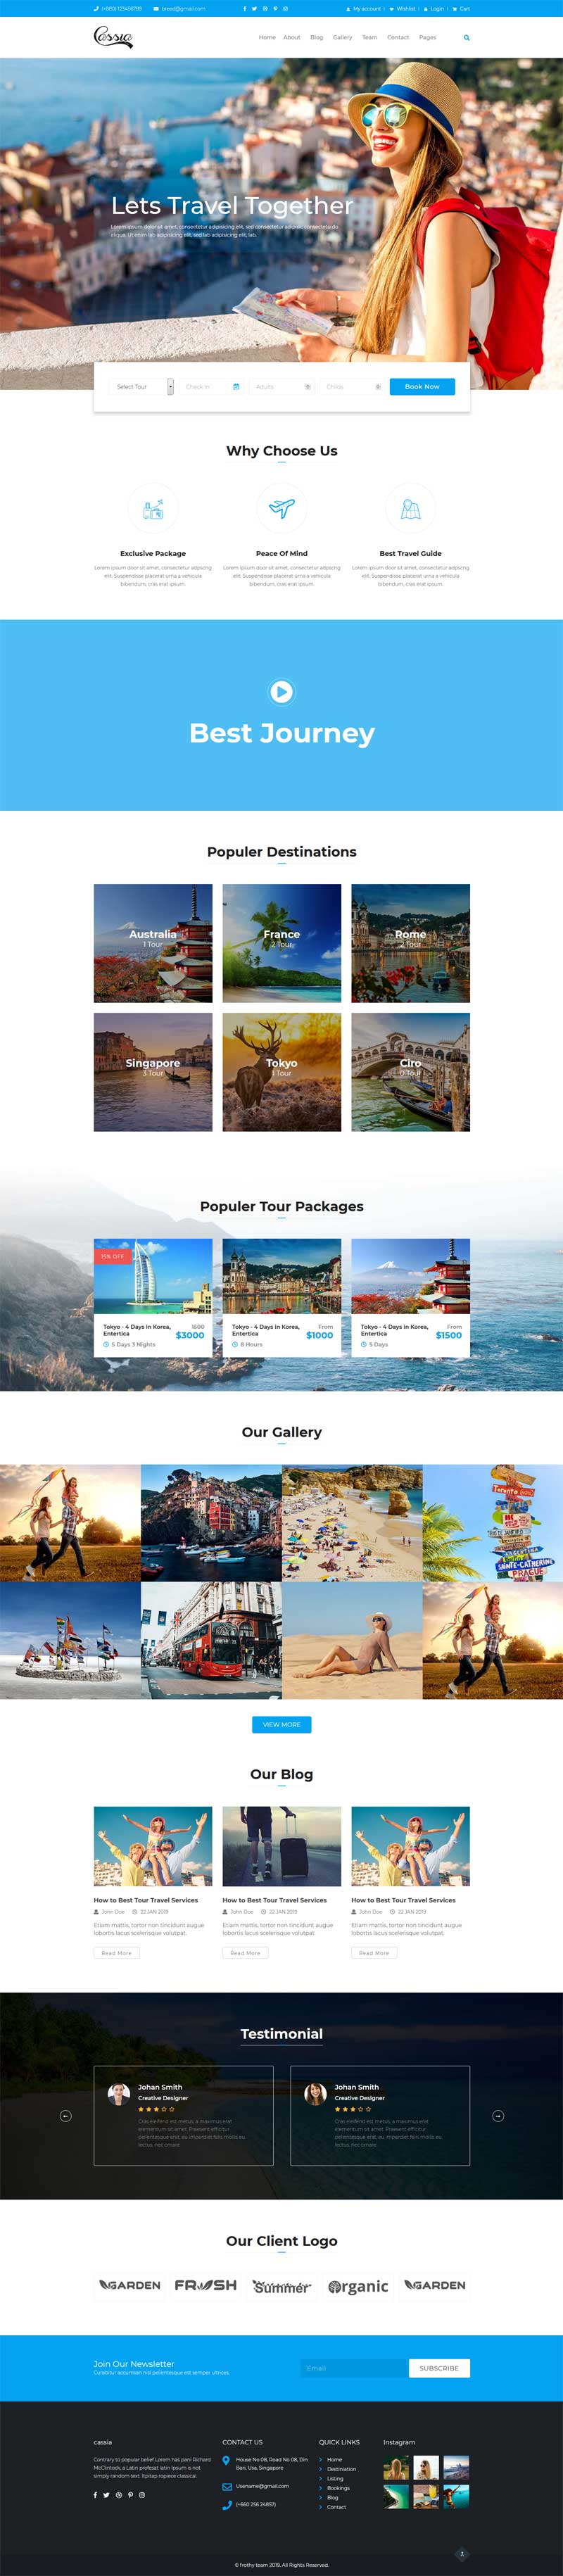 蓝色的旅行社组团网站Bootstrap模板